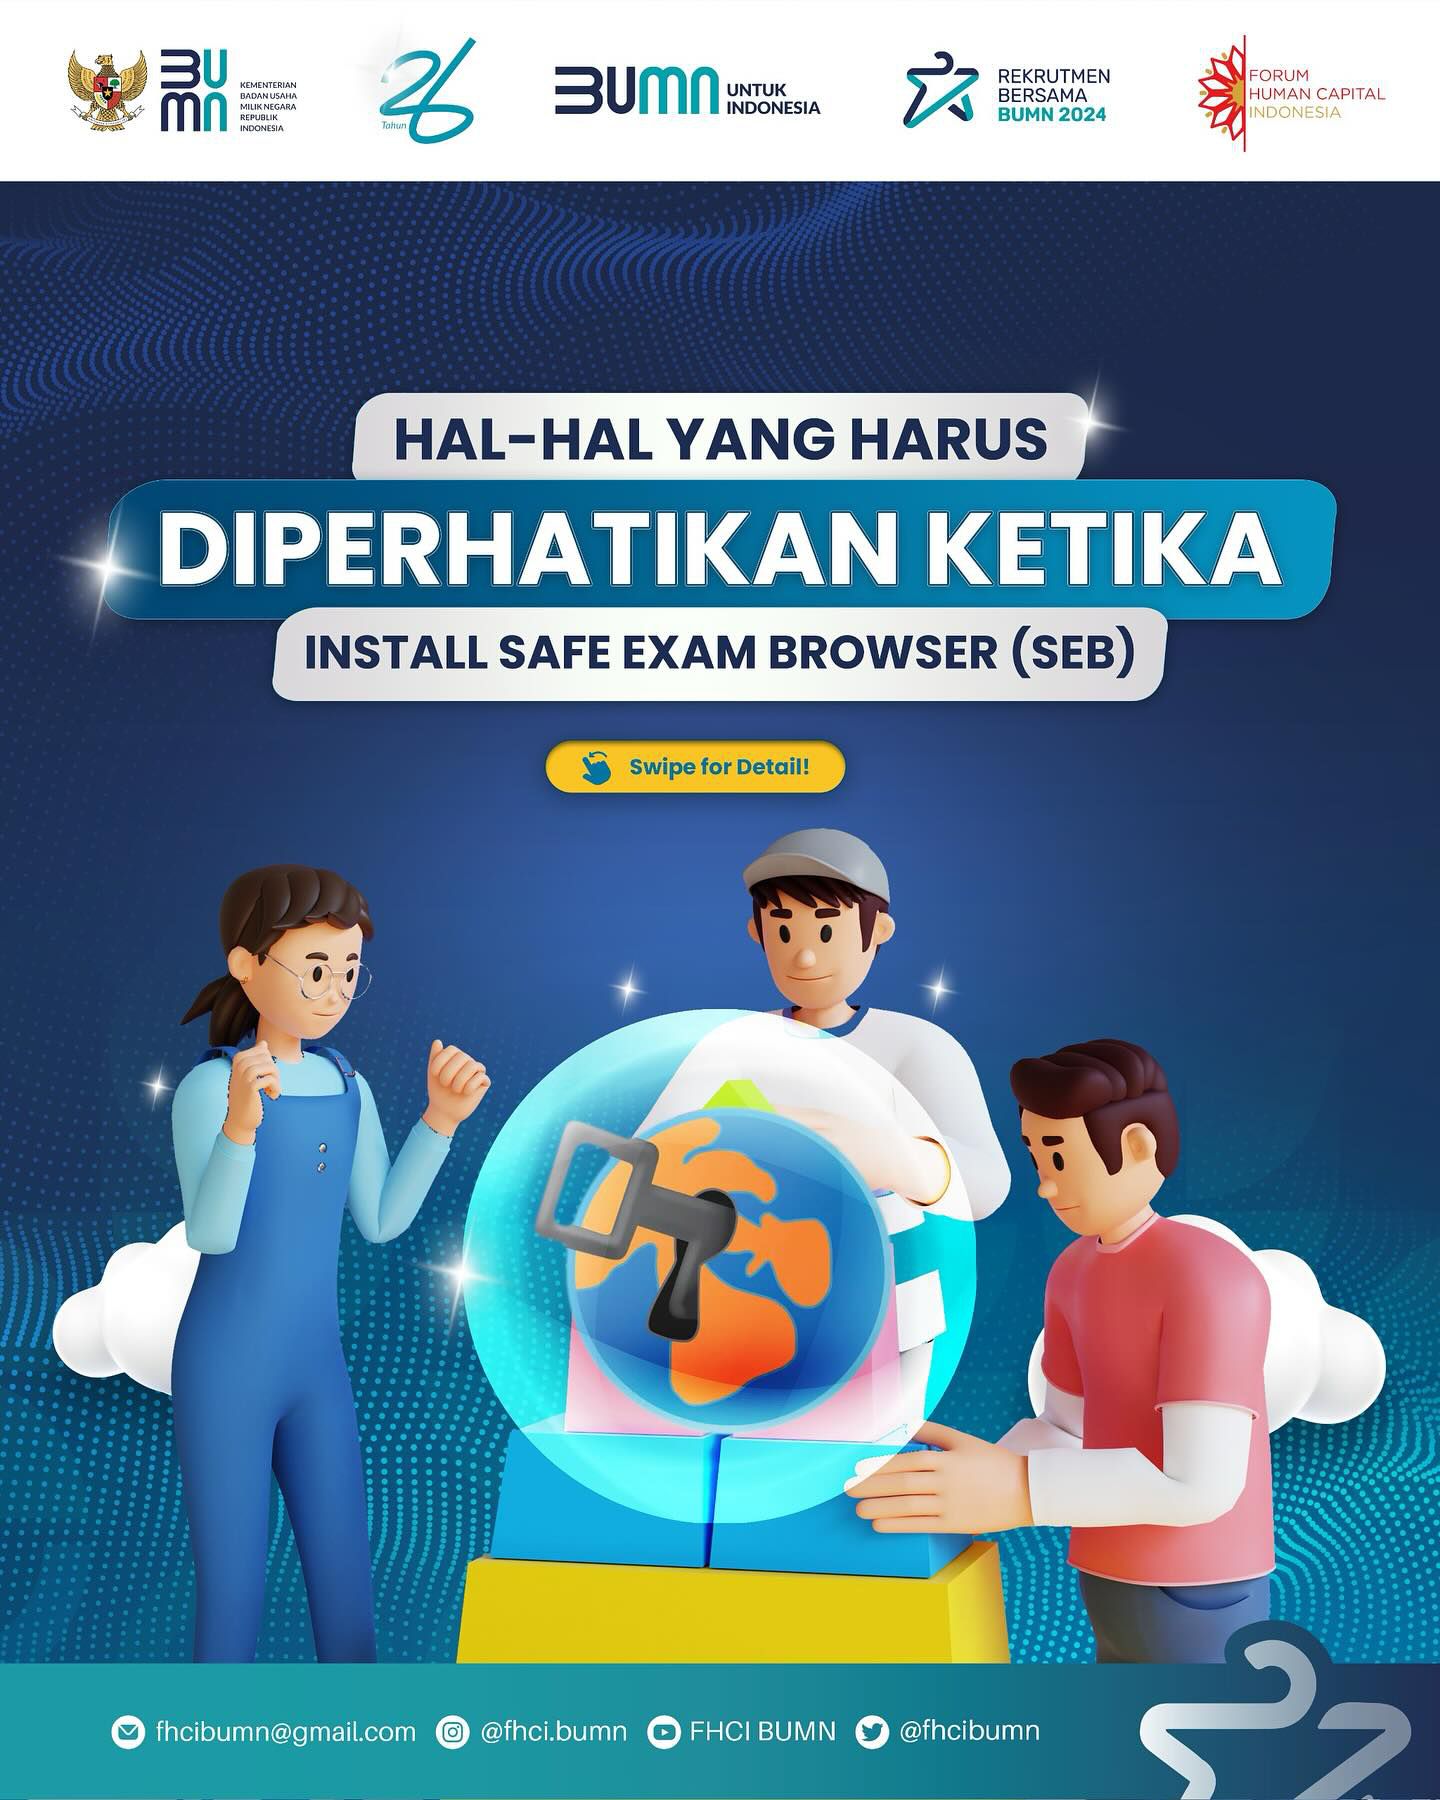 Safe Exam Browser